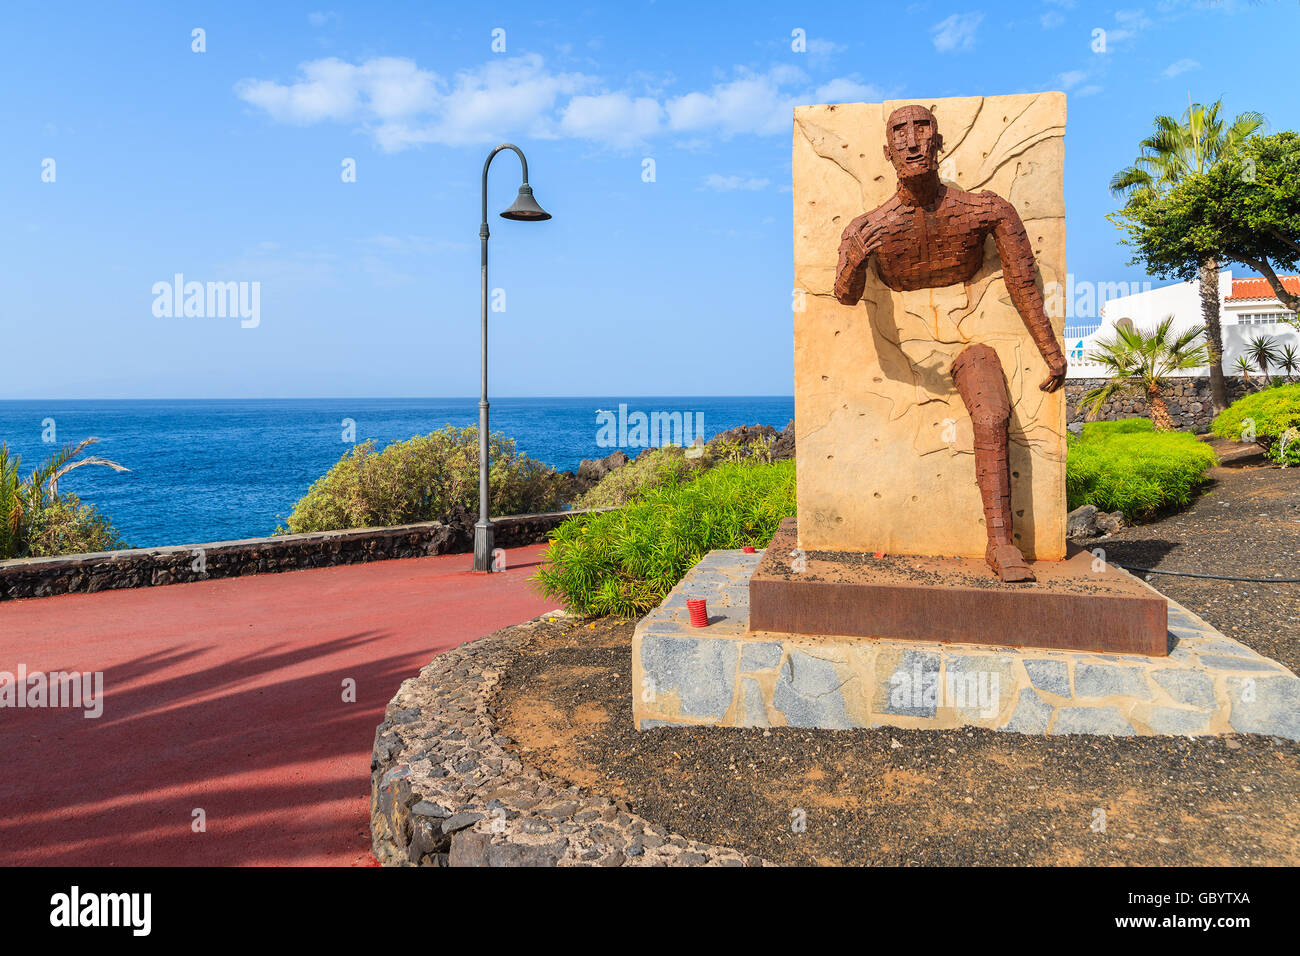 La VILLE DE SAN JUAN, l'ÎLE DE TENERIFE - NOV 15, 2015 : Sculpture de promenade côtière à San Juan ville, Tenerife, Canaries, Espagne Banque D'Images